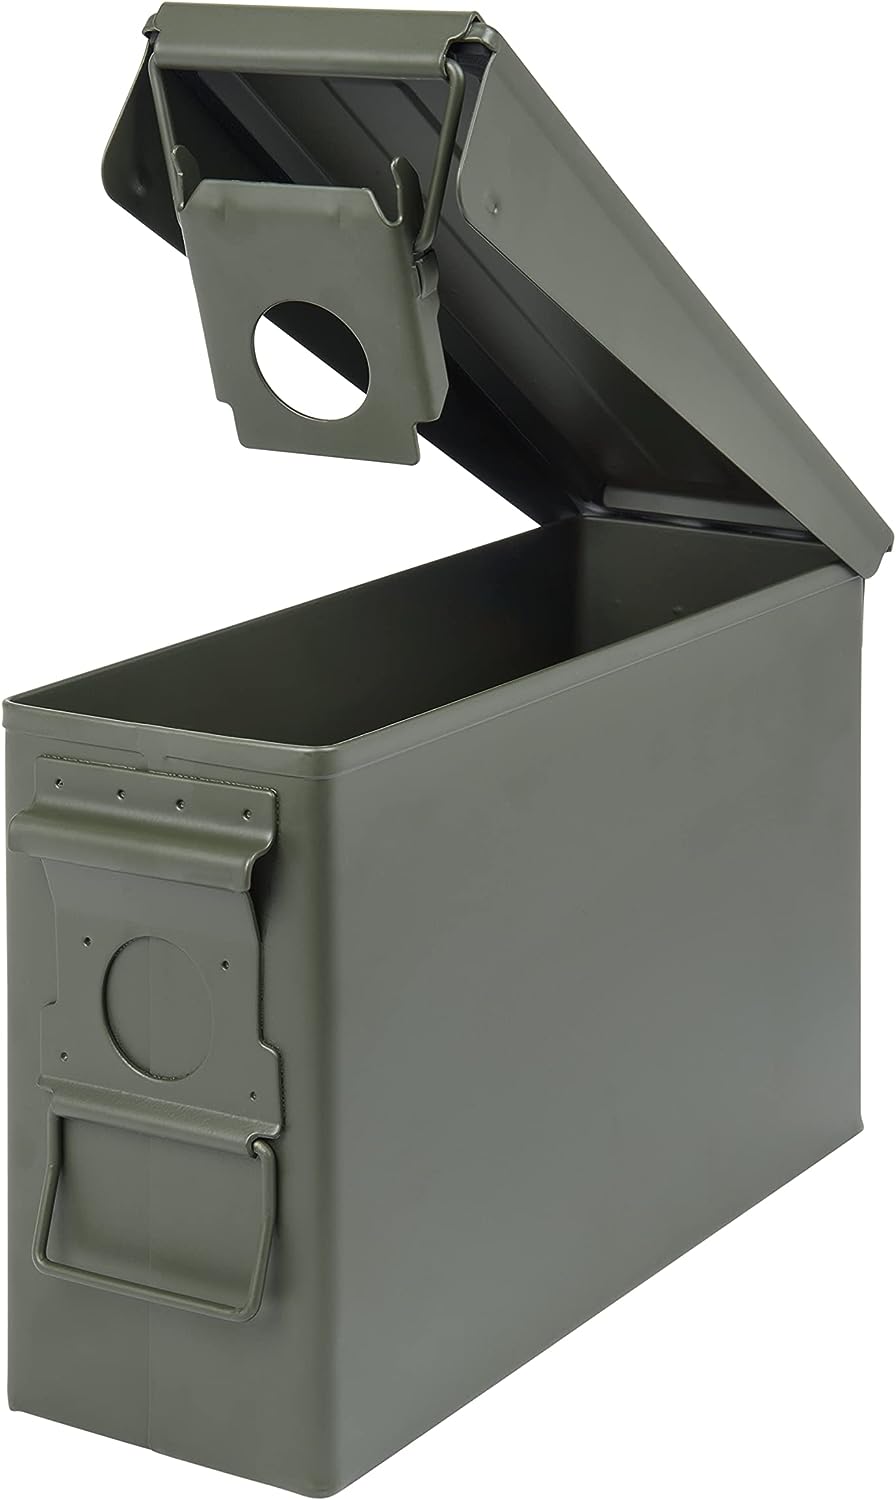 Caixa de munició d'acer clàssica, tapa amb tancament i impermeable, caixes de munició de caixes metàl·liques, caixa d'emmagatzematge de metall impermeable, AMBX01